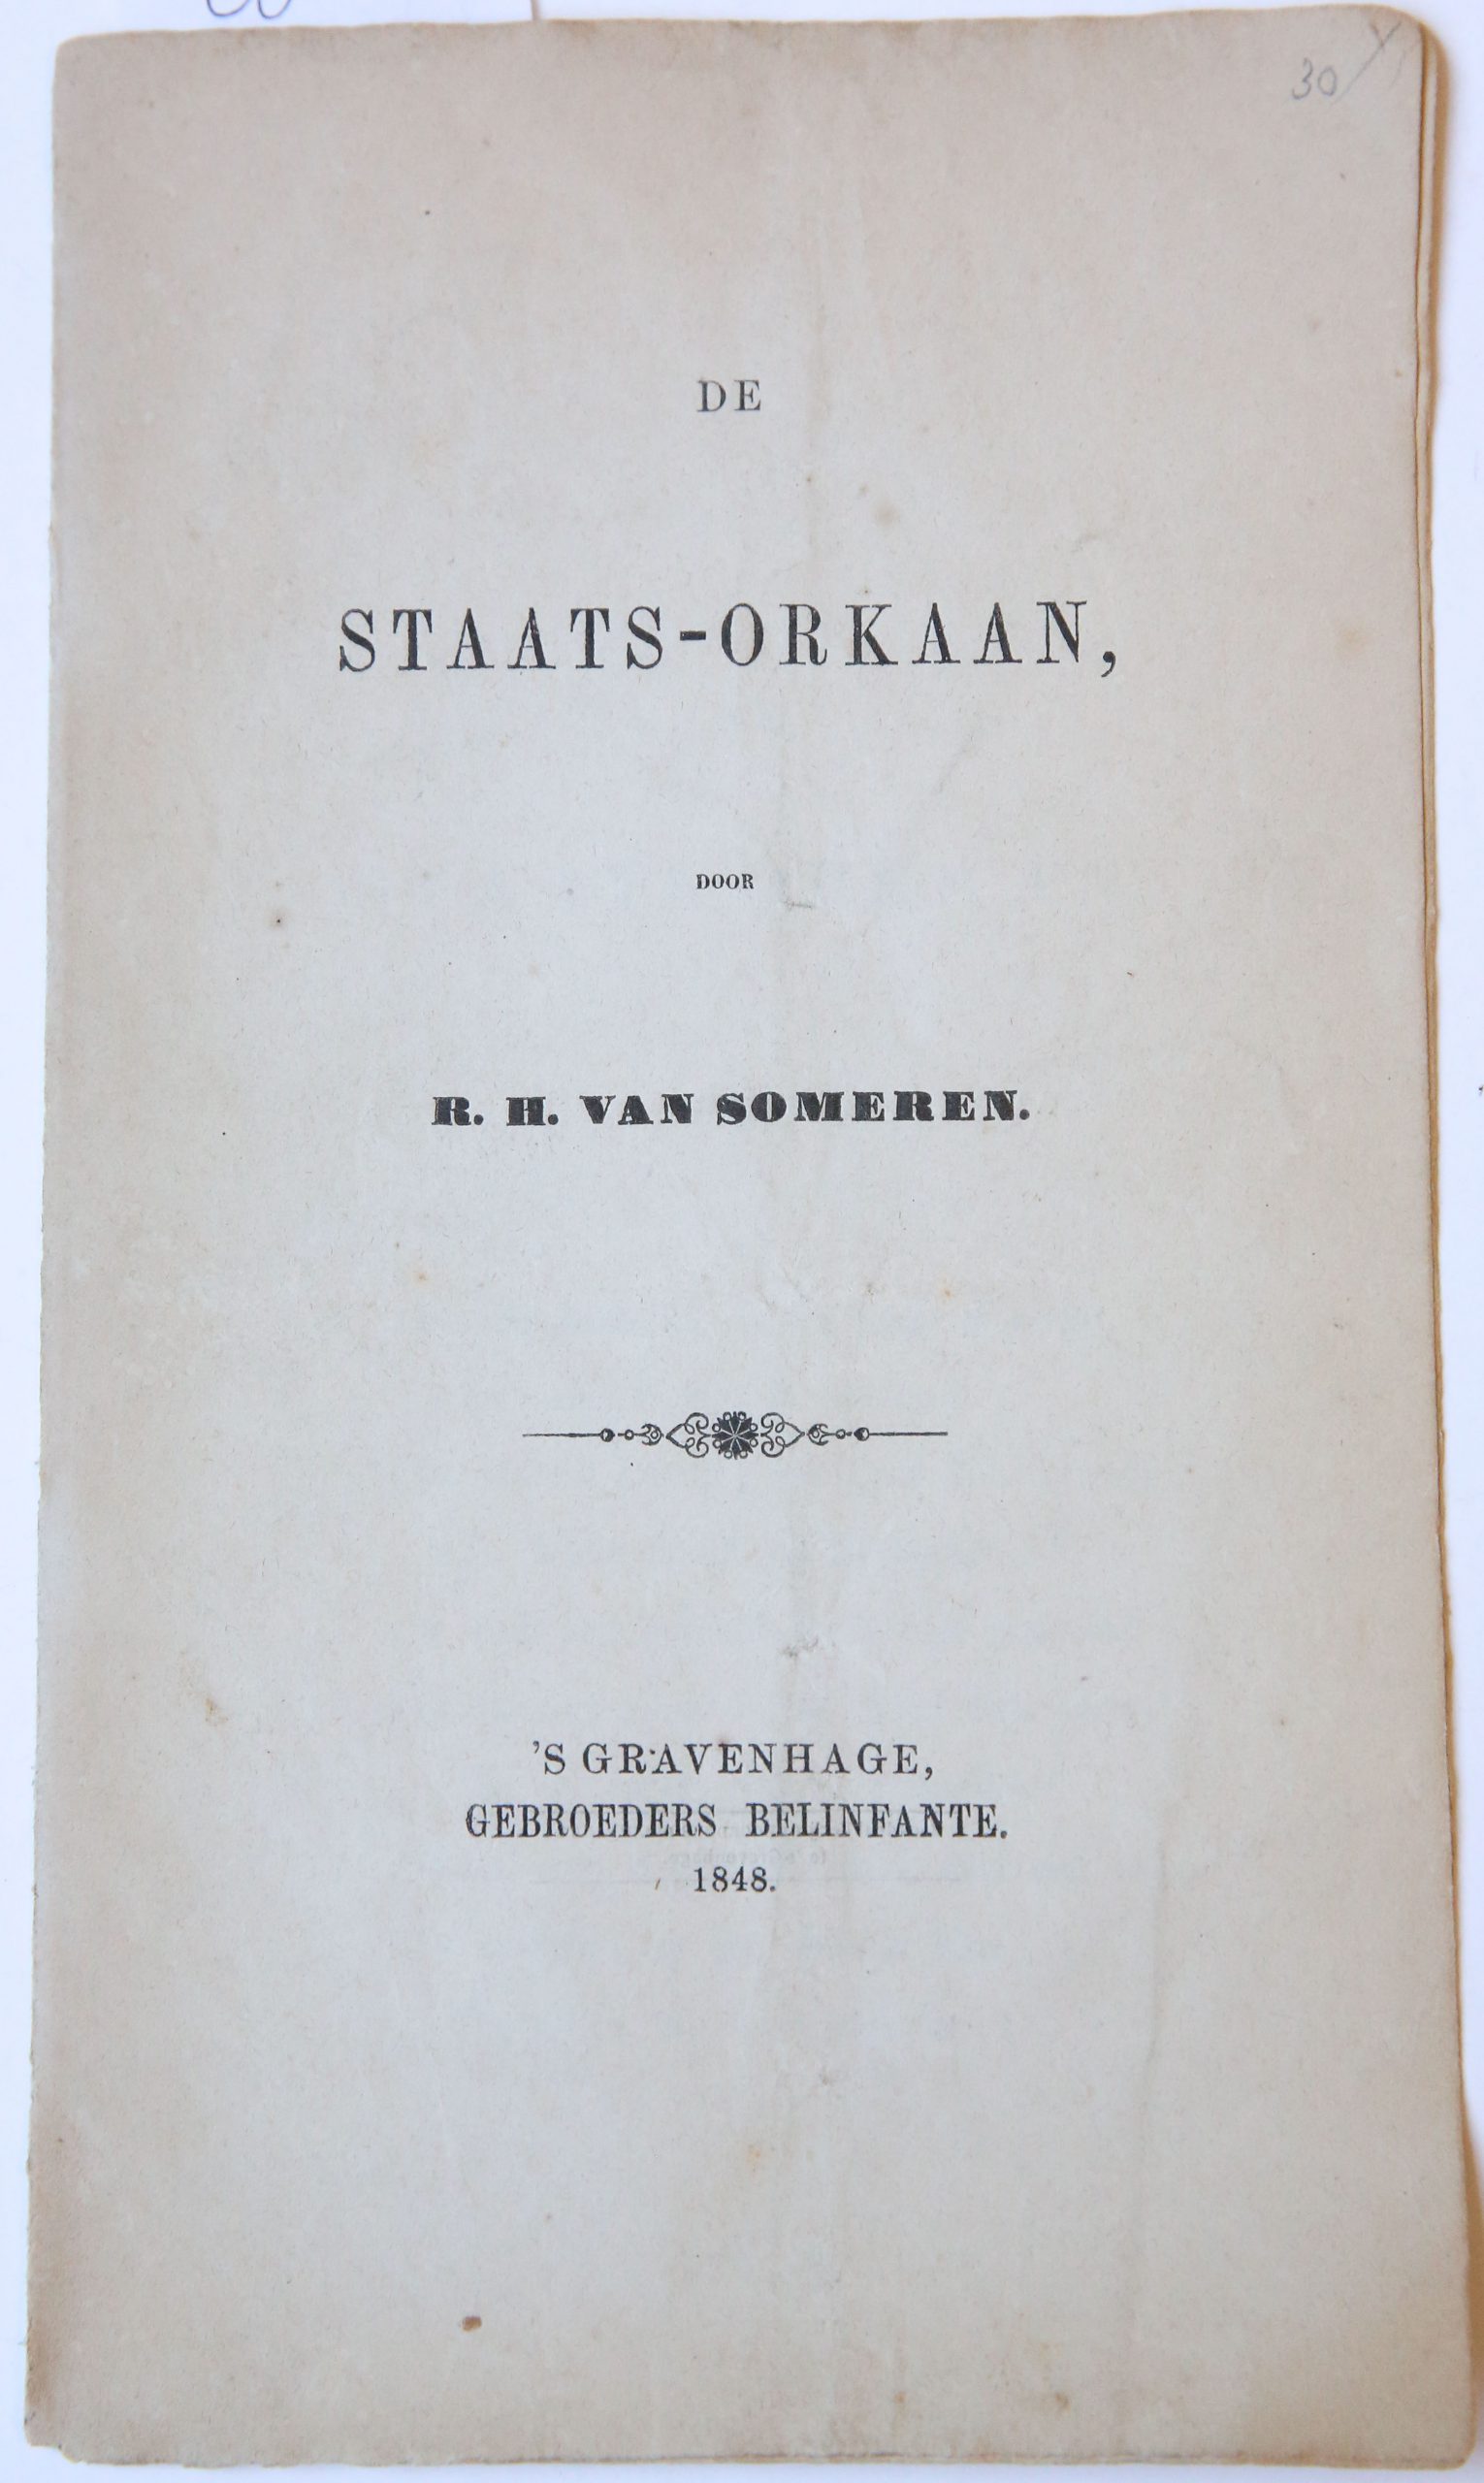 De Staats-orkaan, 's Gravenhage: Gebroeders Belinfante, 1848. 8 pp.